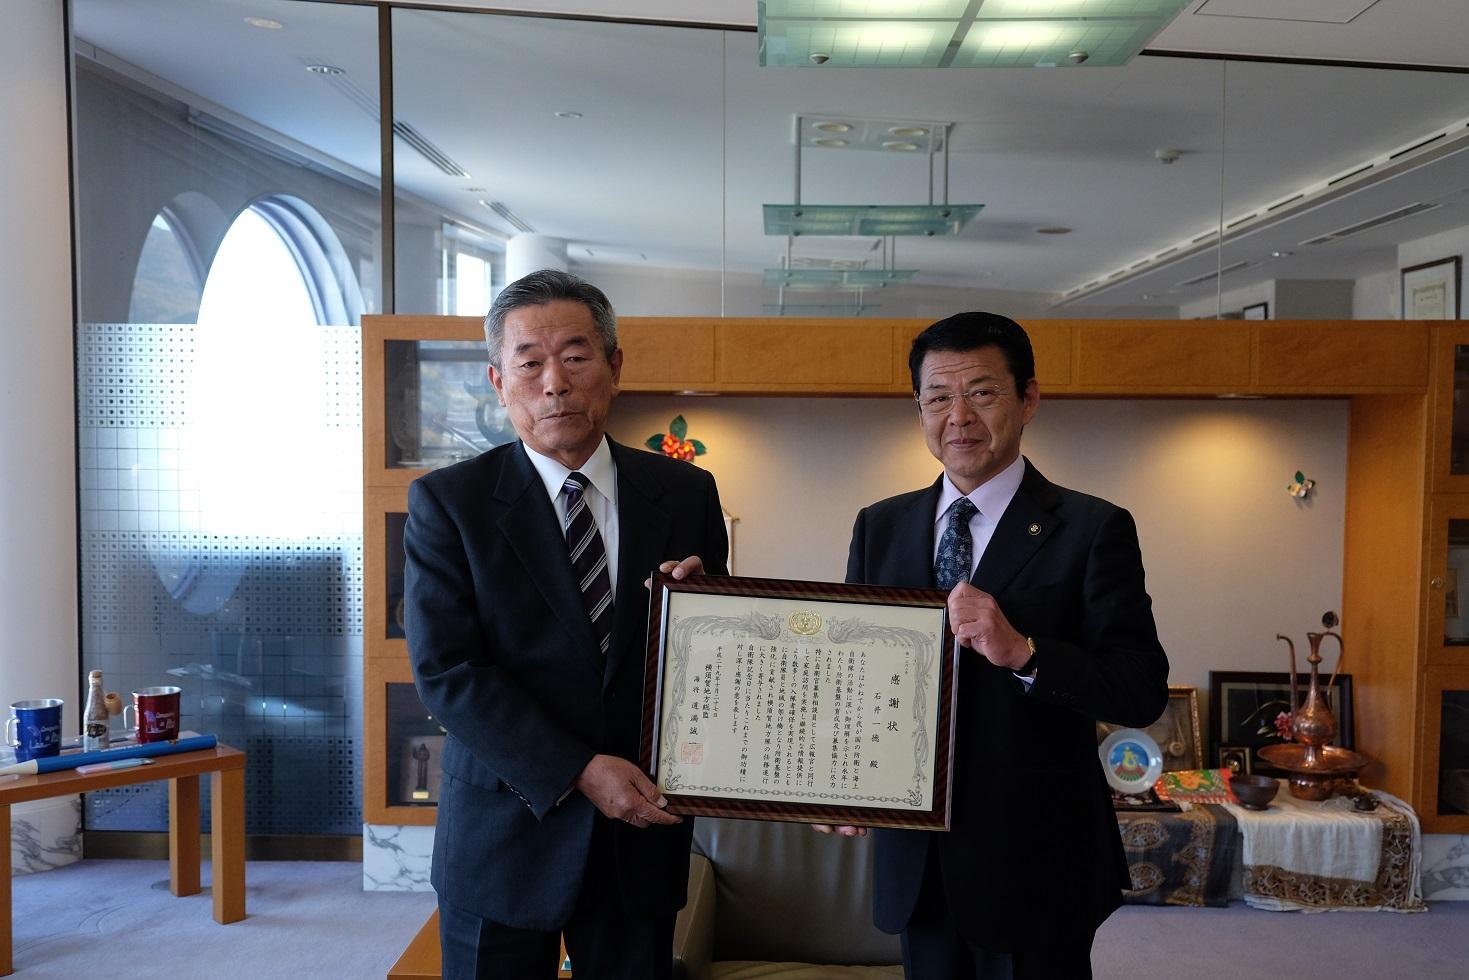 2017年12月5日石井一徳さんと市長の2人で感謝状を掲げる写真